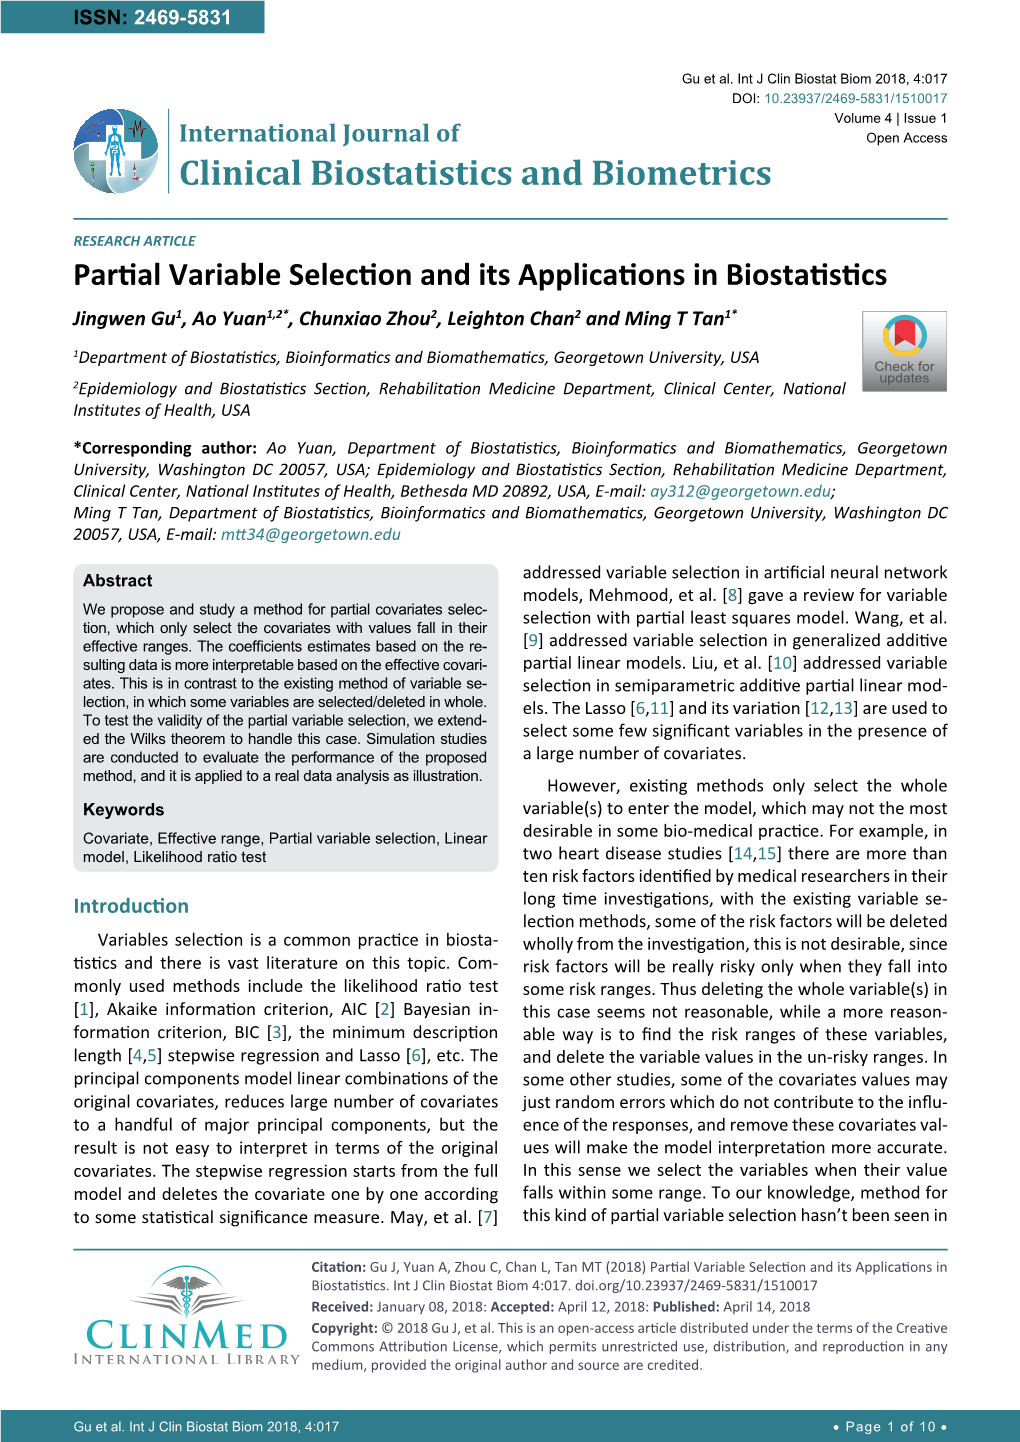 Partial Variable Selection and Its Applications in Biostatistics Jingwen Gu1, Ao Yuan1,2*, Chunxiao Zhou2, Leighton Chan2 and Ming T Tan1*